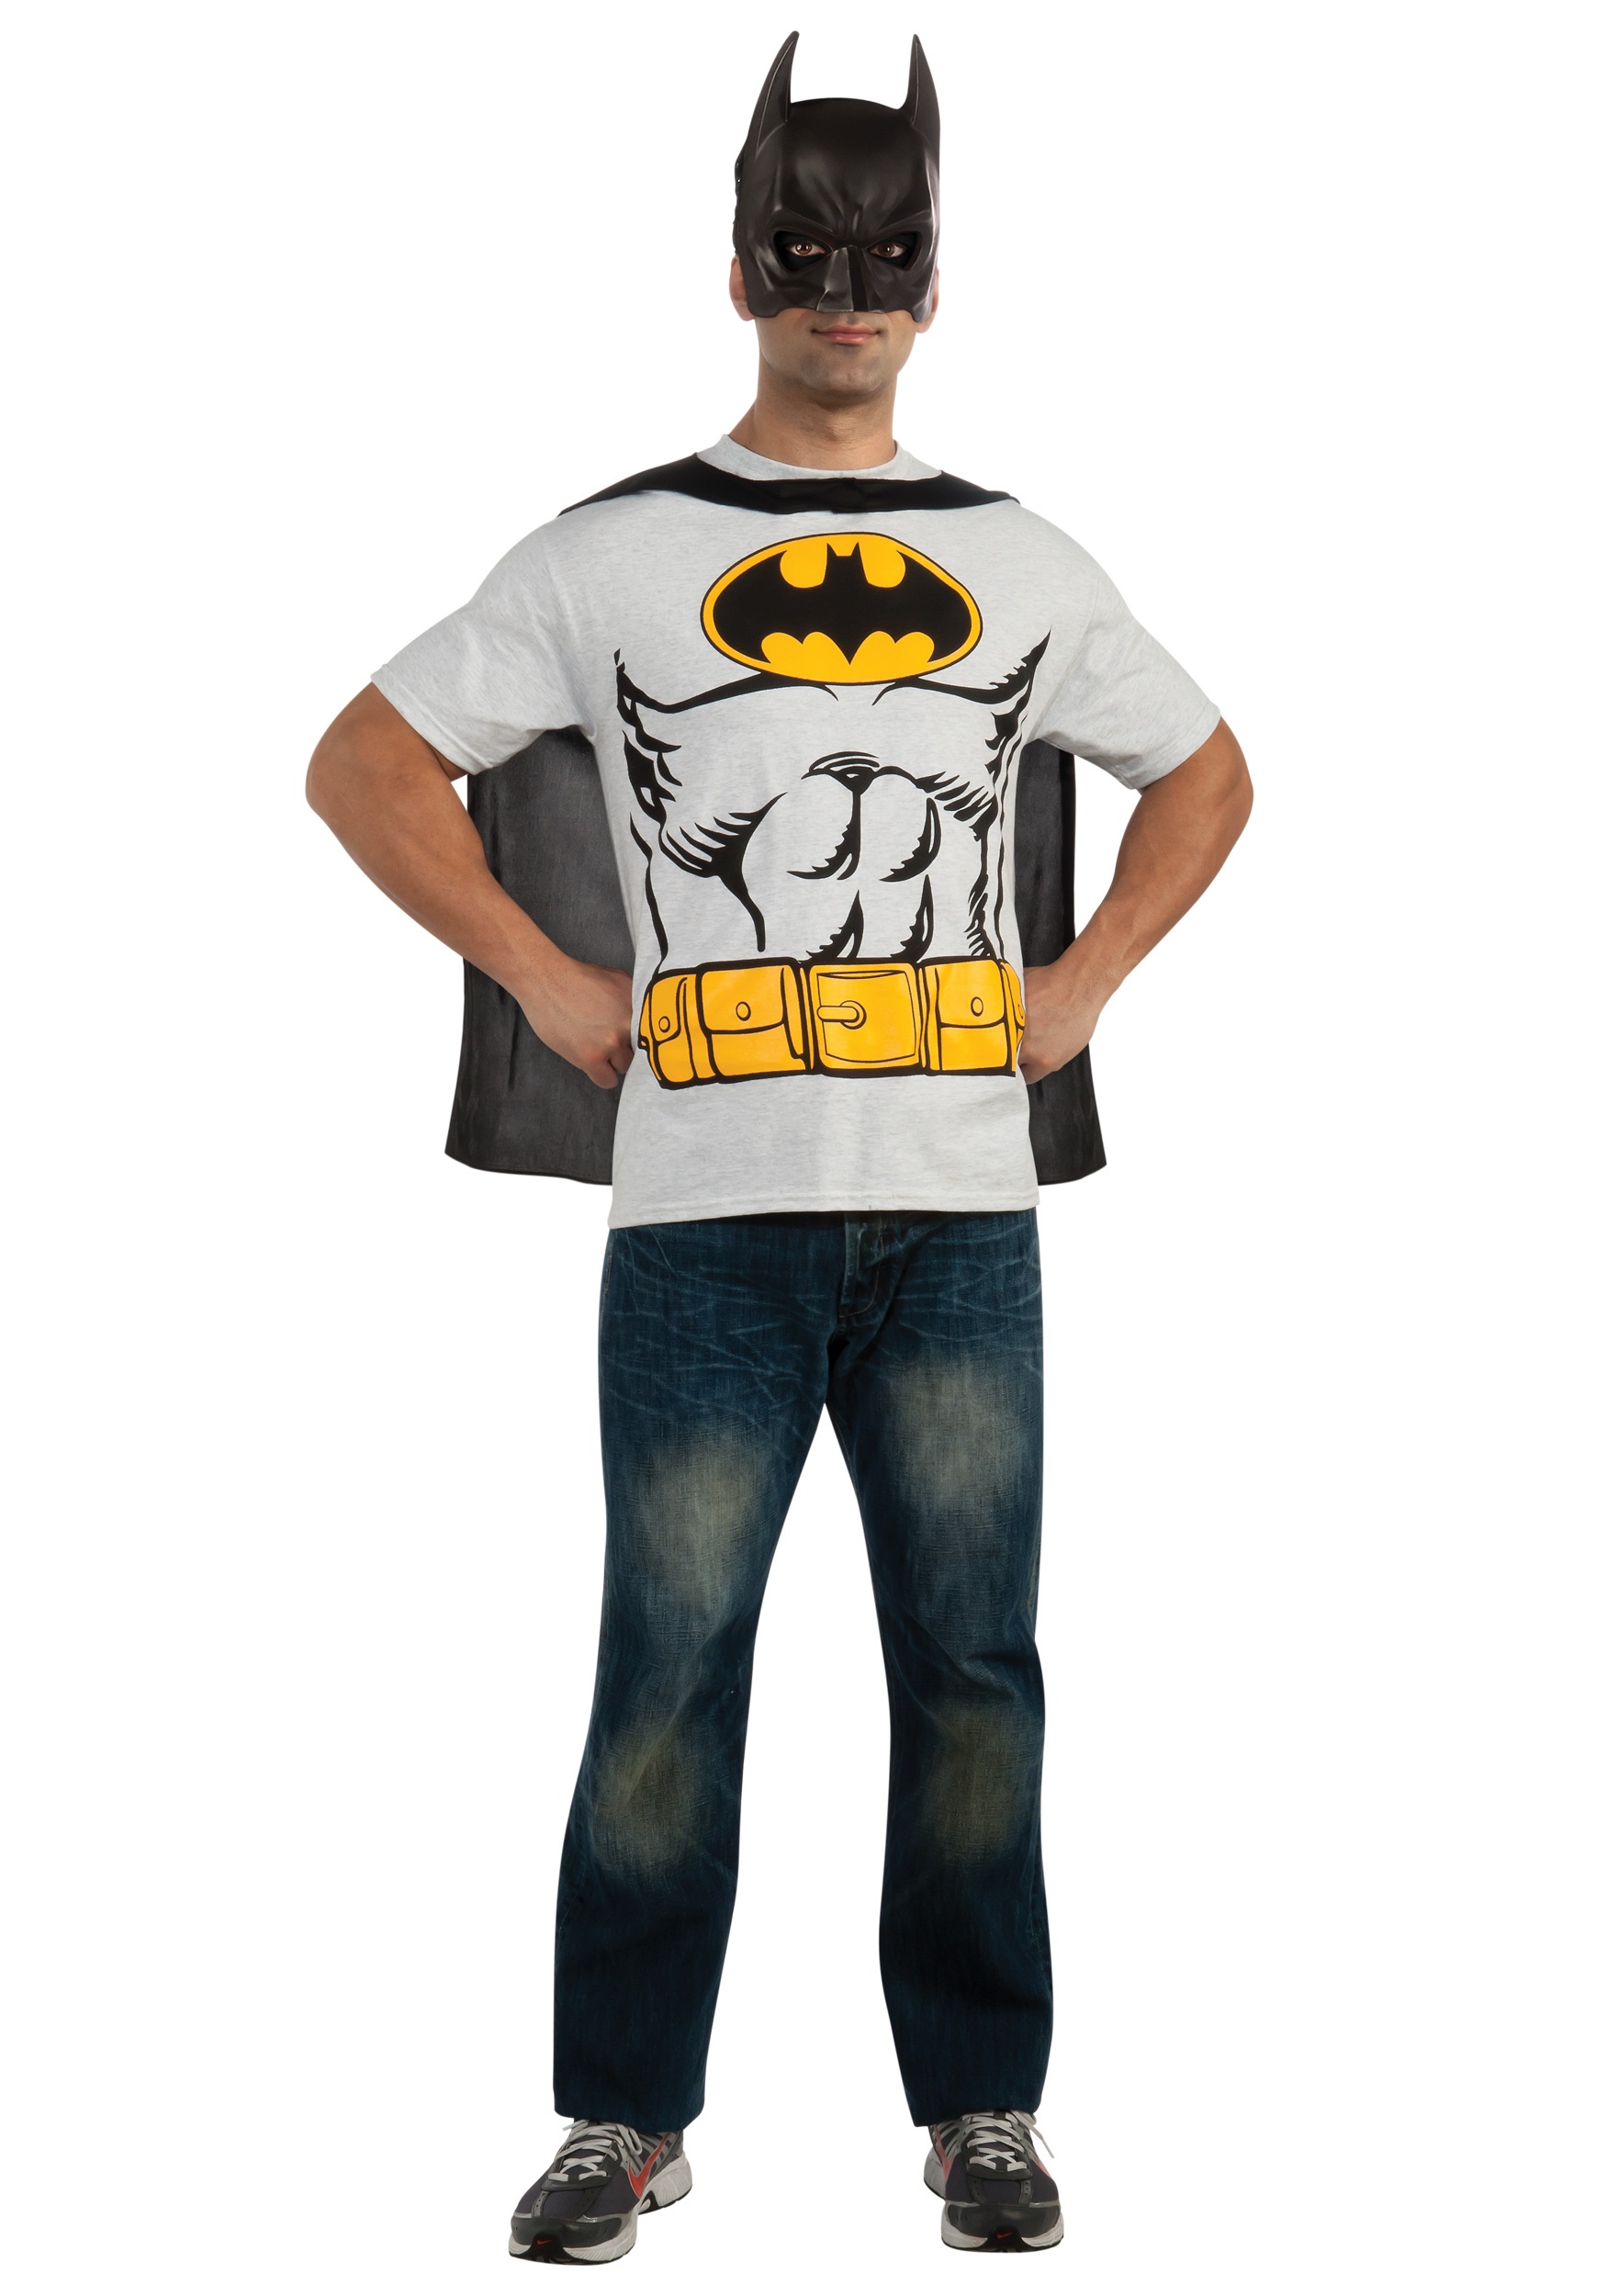 Barry Politik Tempel Mens Classic Batman T-Shirt with Cape Costume